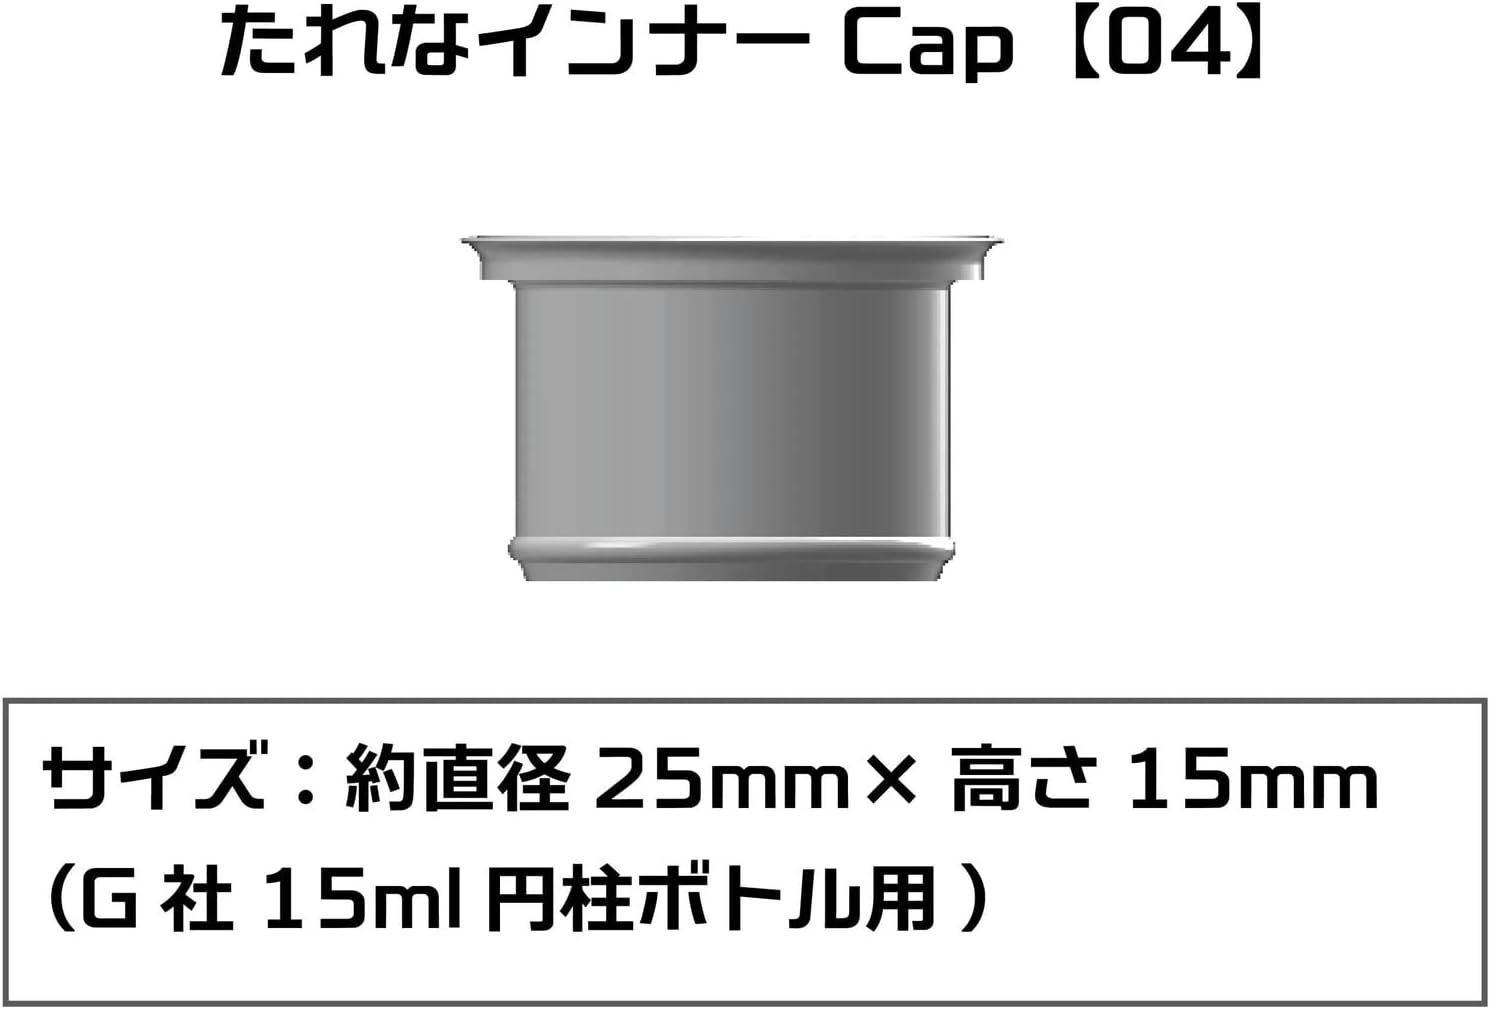 Plamokojo PMKJ015GA04 Tare Inner Cap 04 (for G 15ml Cylindrical Bottles) 6 Pcs - BanzaiHobby